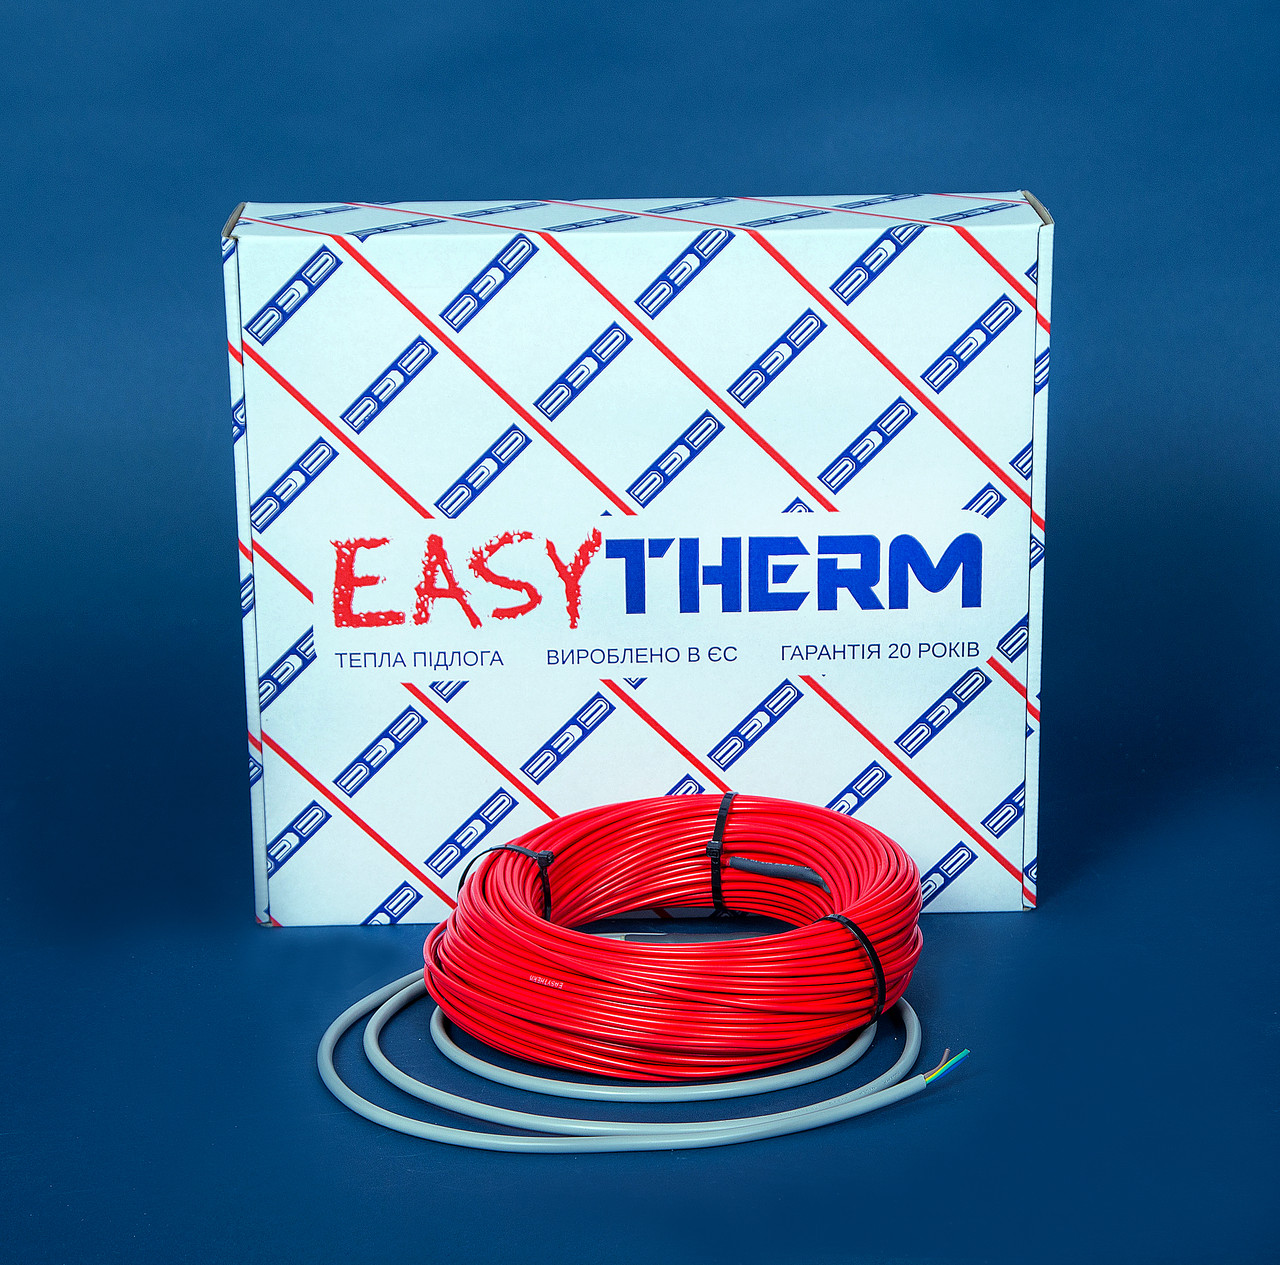 Электрический теплый пол EasyTherm Easycable 21.0 отзывы - изображения 5